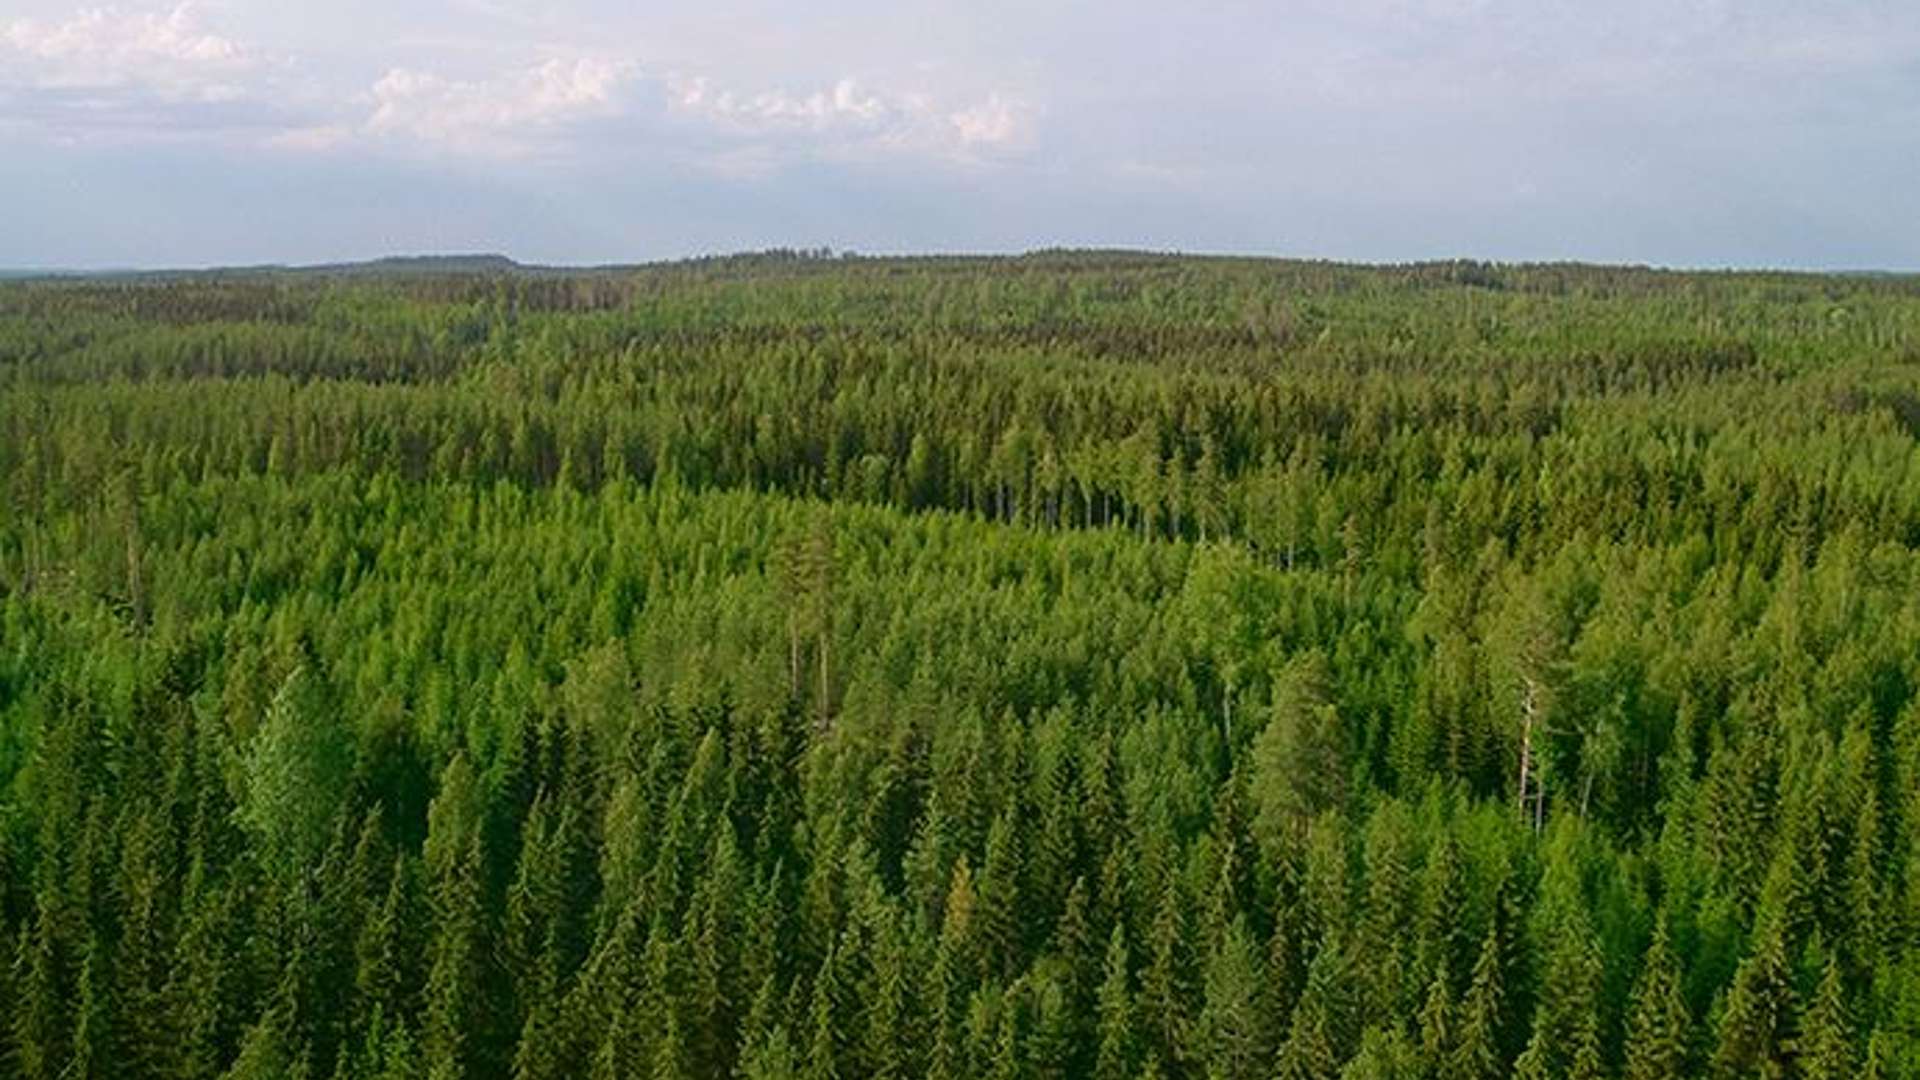 Metsä Board jälleen parhaiden joukossa EcoVadis 2022 -arvioinnissa